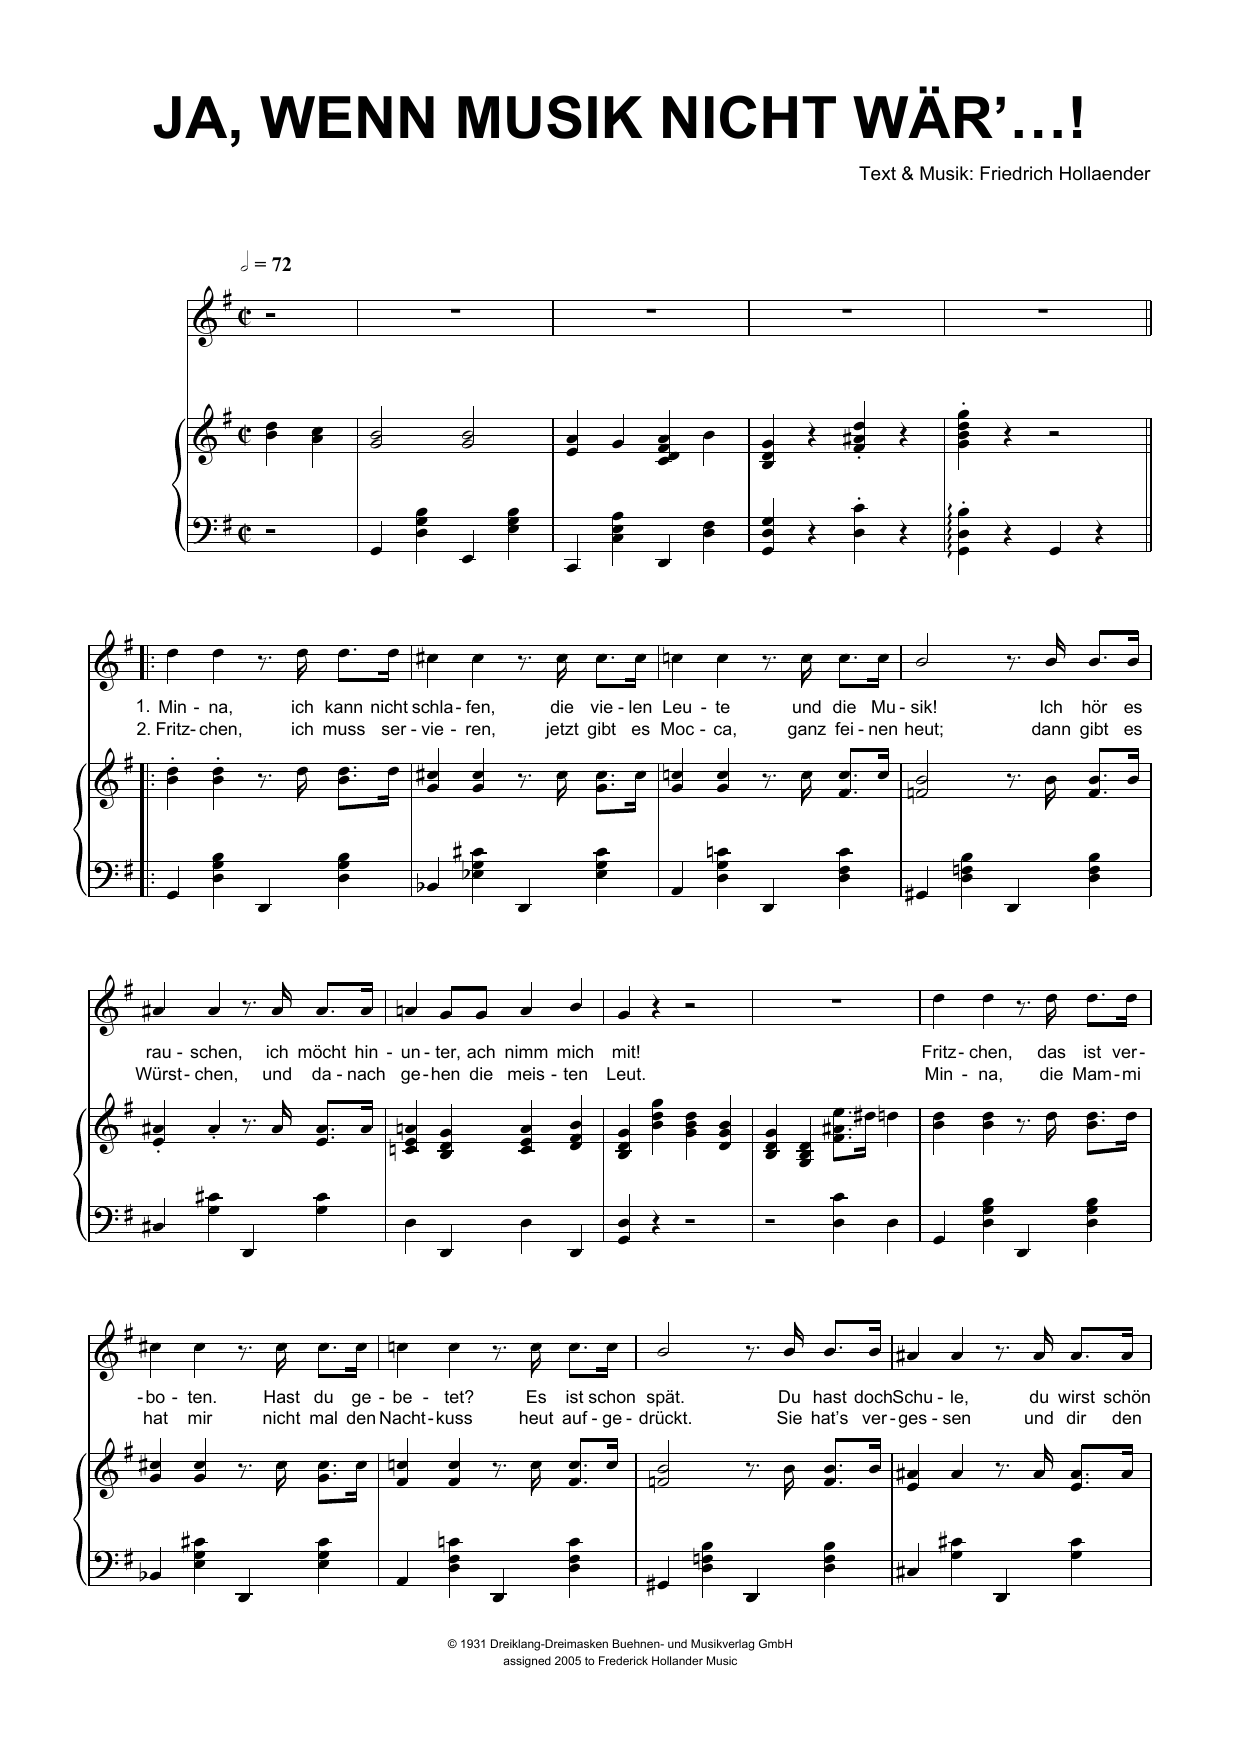 Friedrich Hollaender Ja, Wenn Die Musik Nicht War'...! Sheet Music Notes & Chords for Piano & Vocal - Download or Print PDF